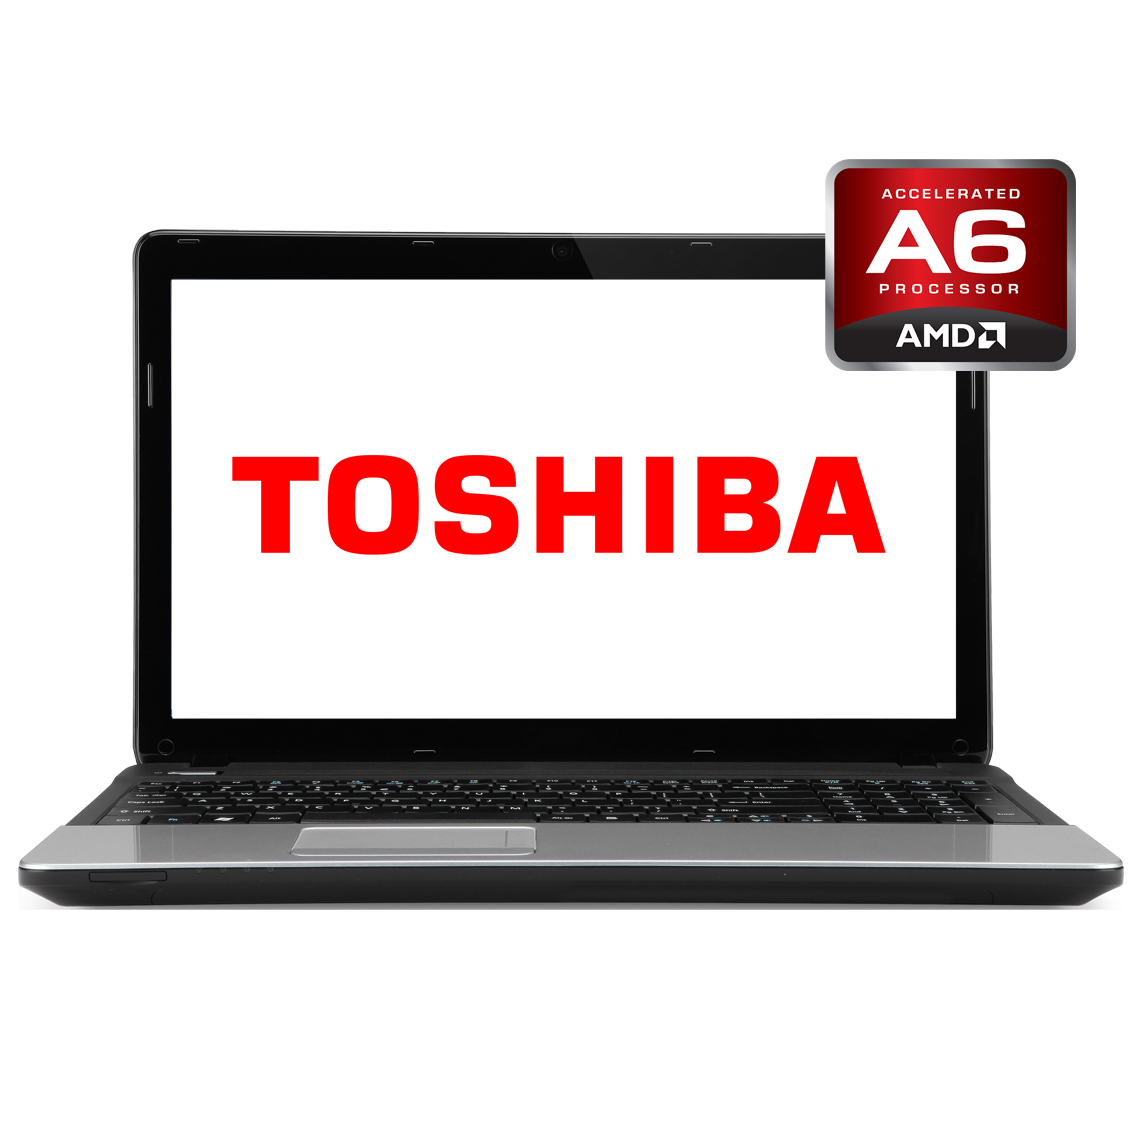 Toshiba - 13 inch AMD A6